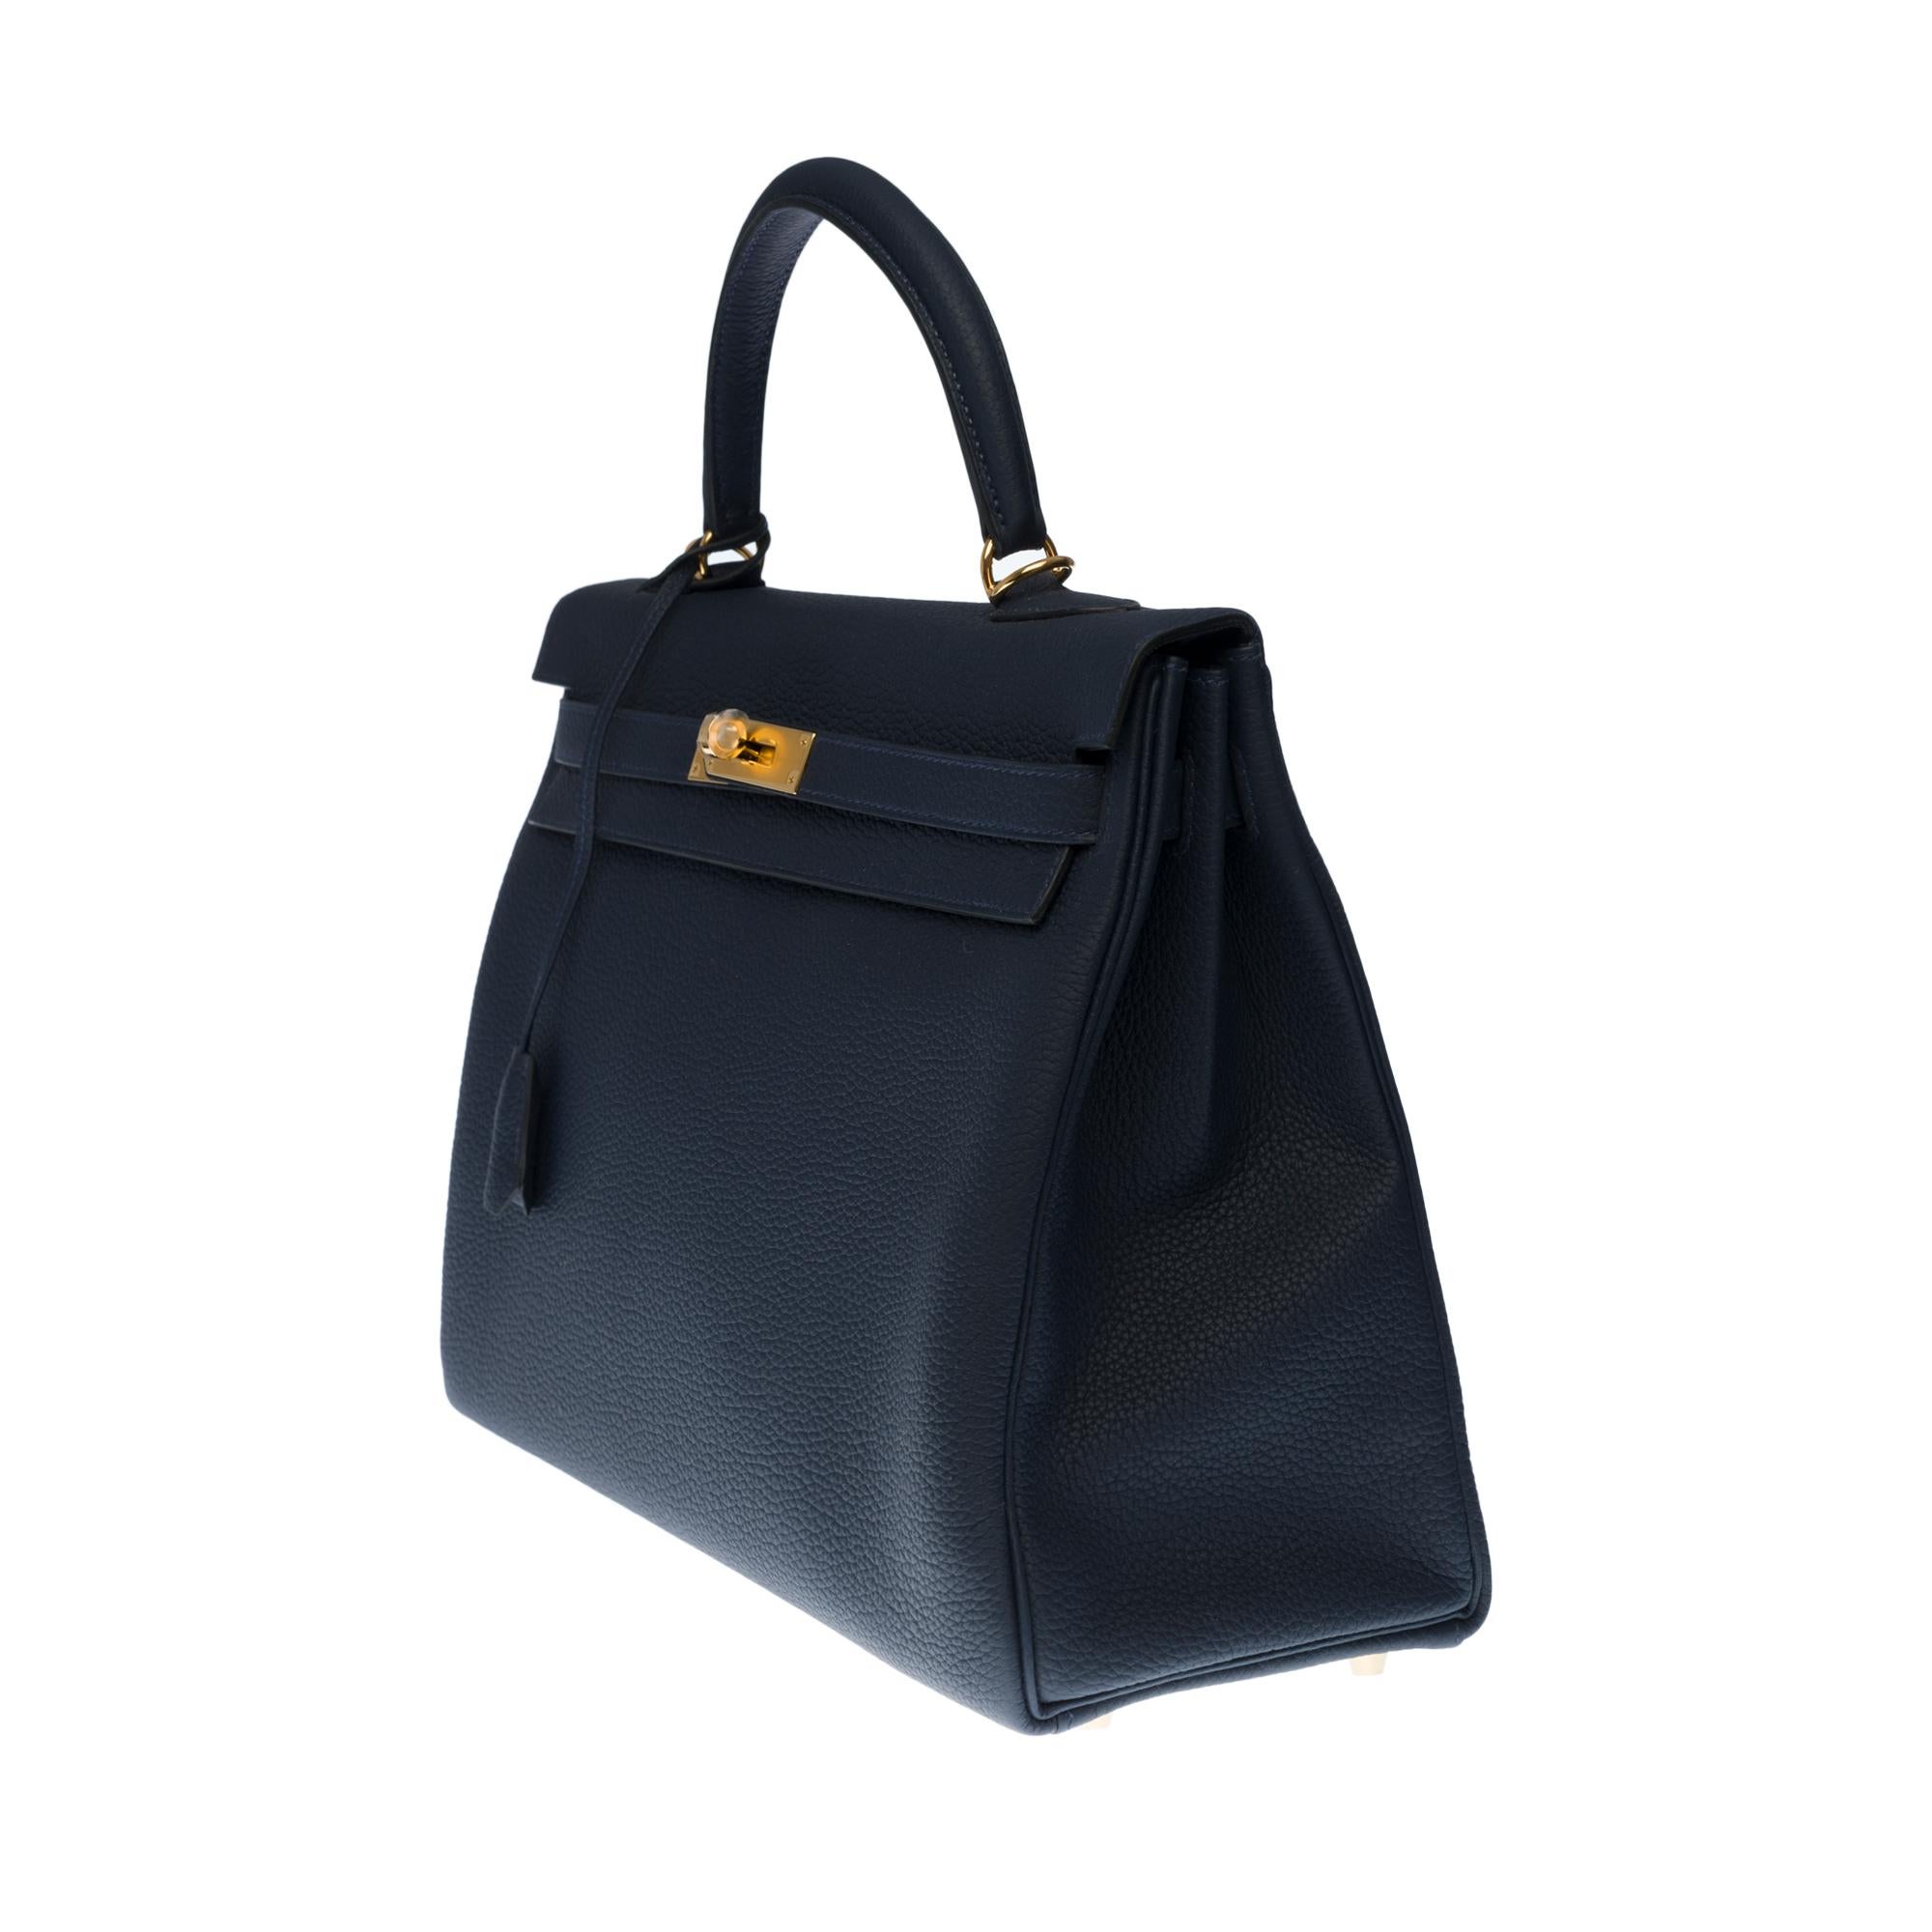 Black NEW- Hermès Kelly 32cm handbag with strap in bleu nuit togo leather, GHW